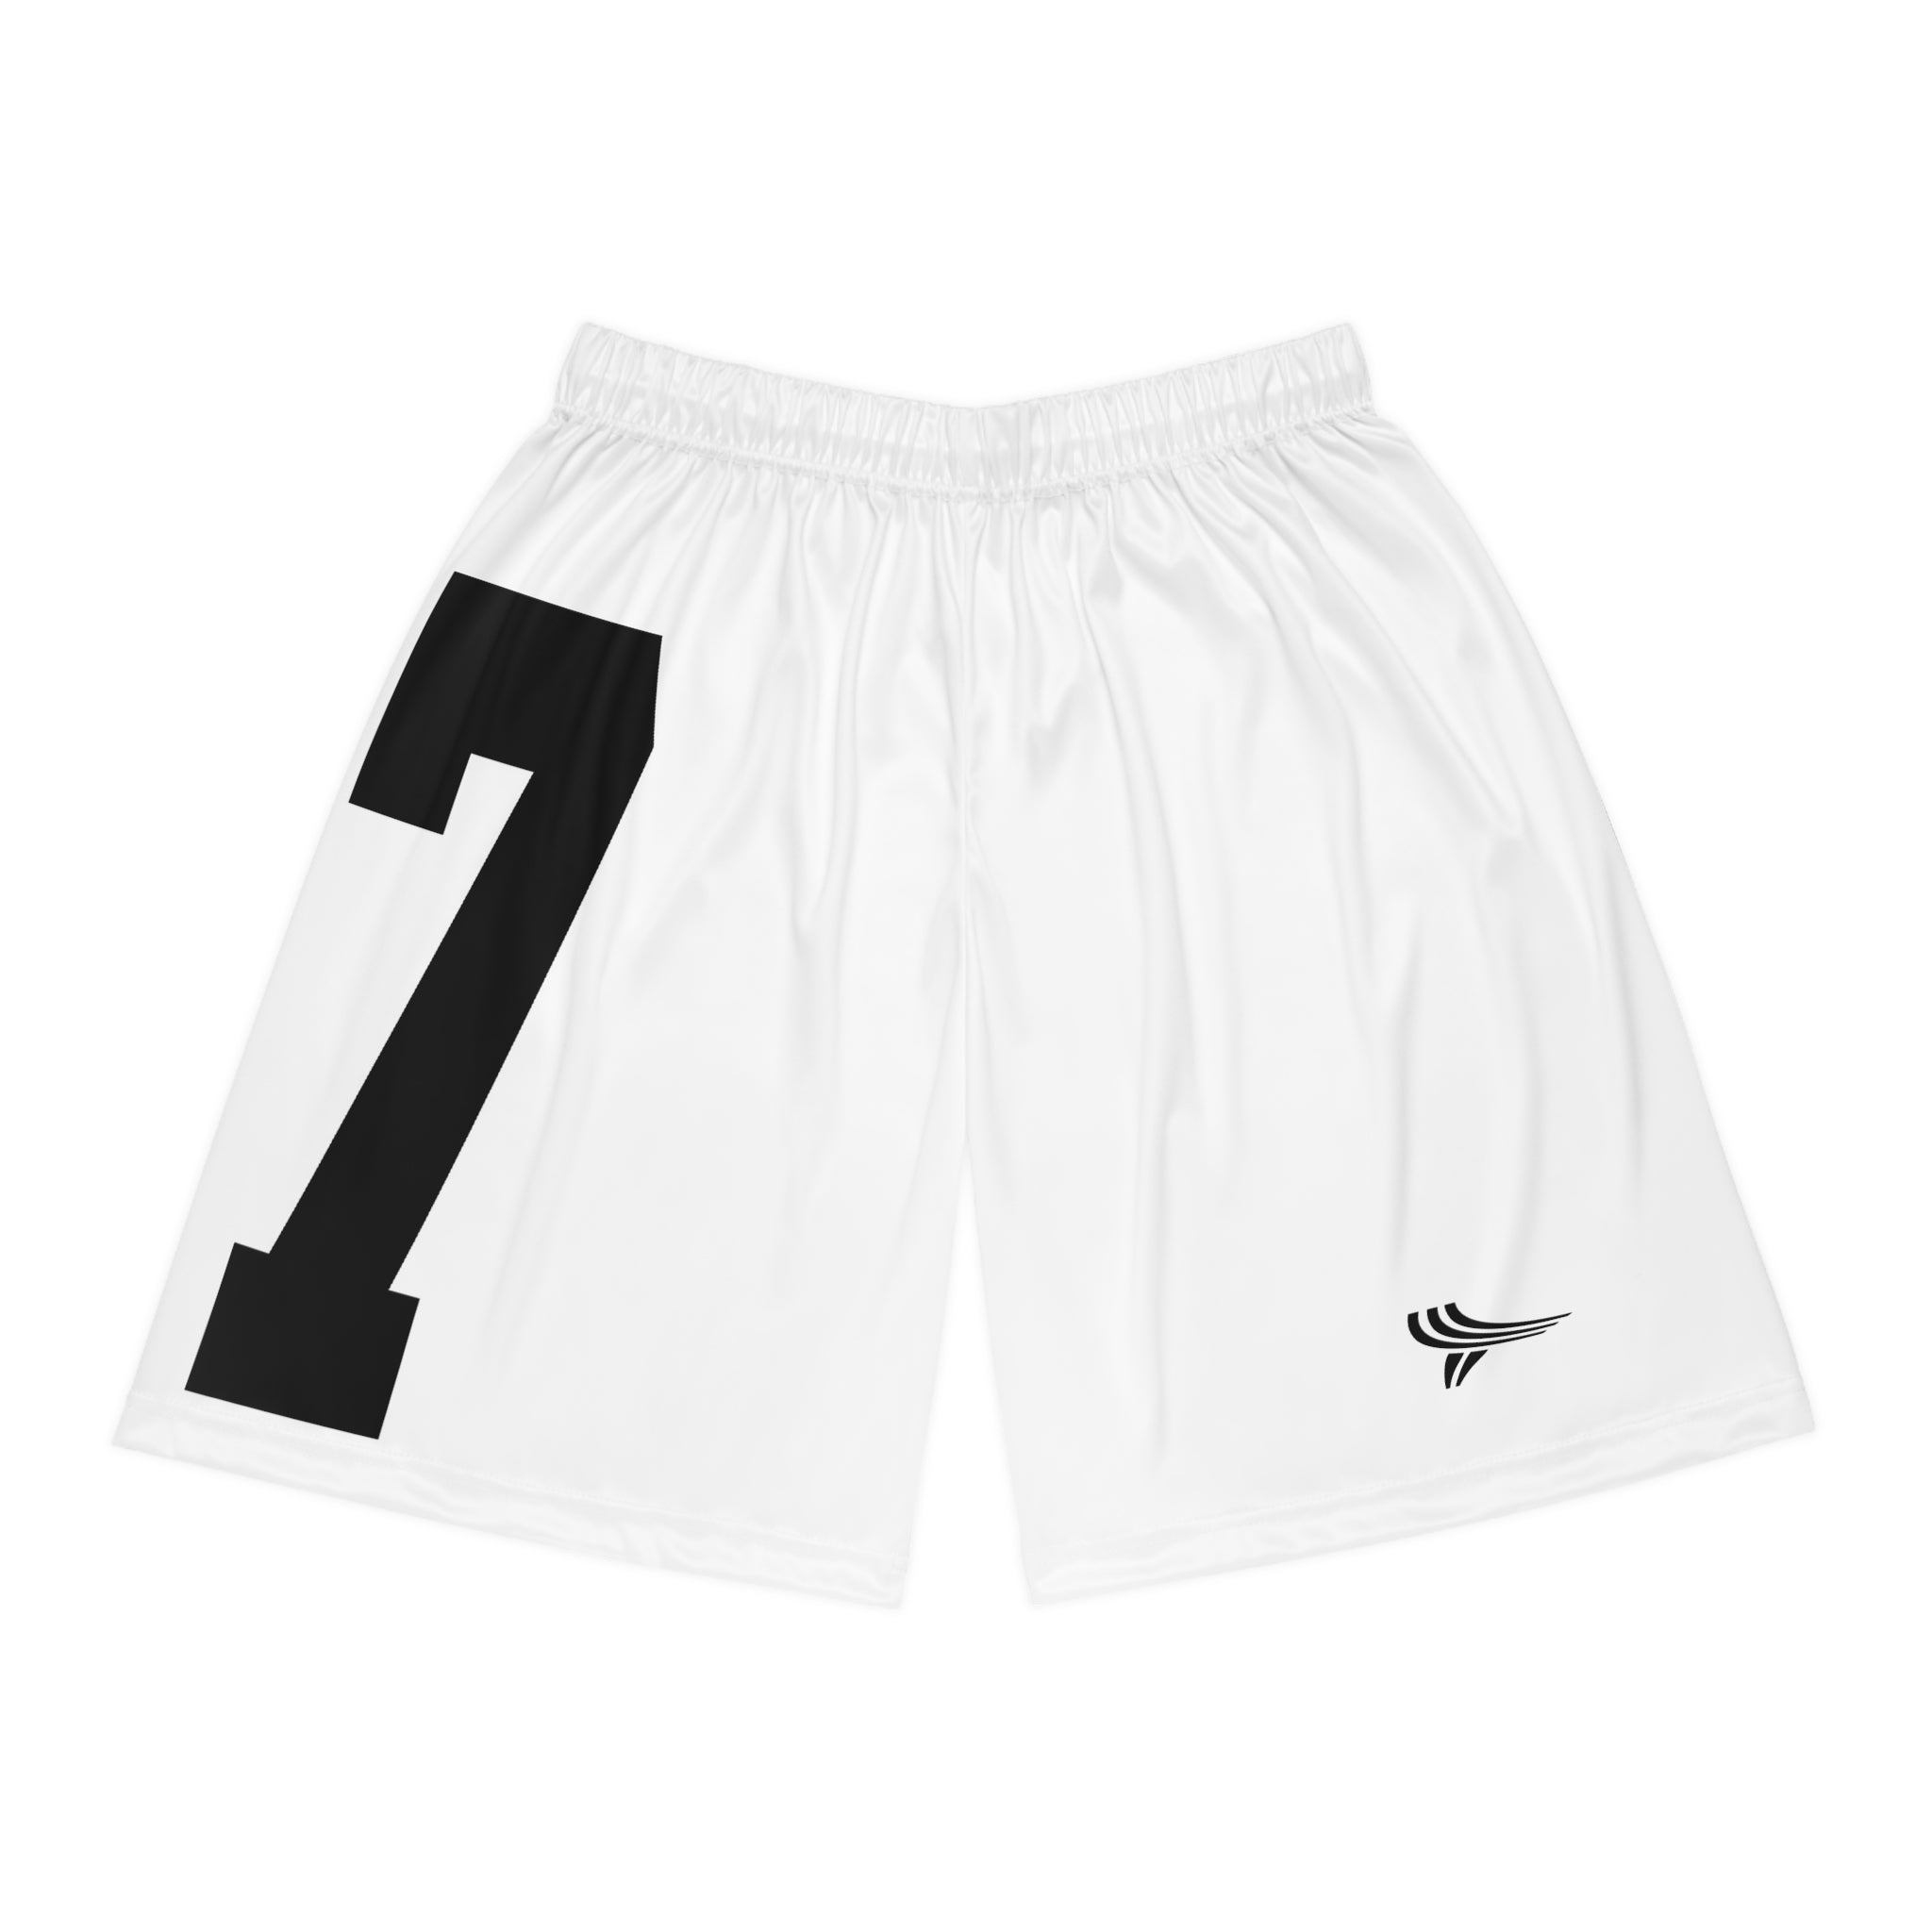 Product Image of 77/Logo Basketball Shorts #1